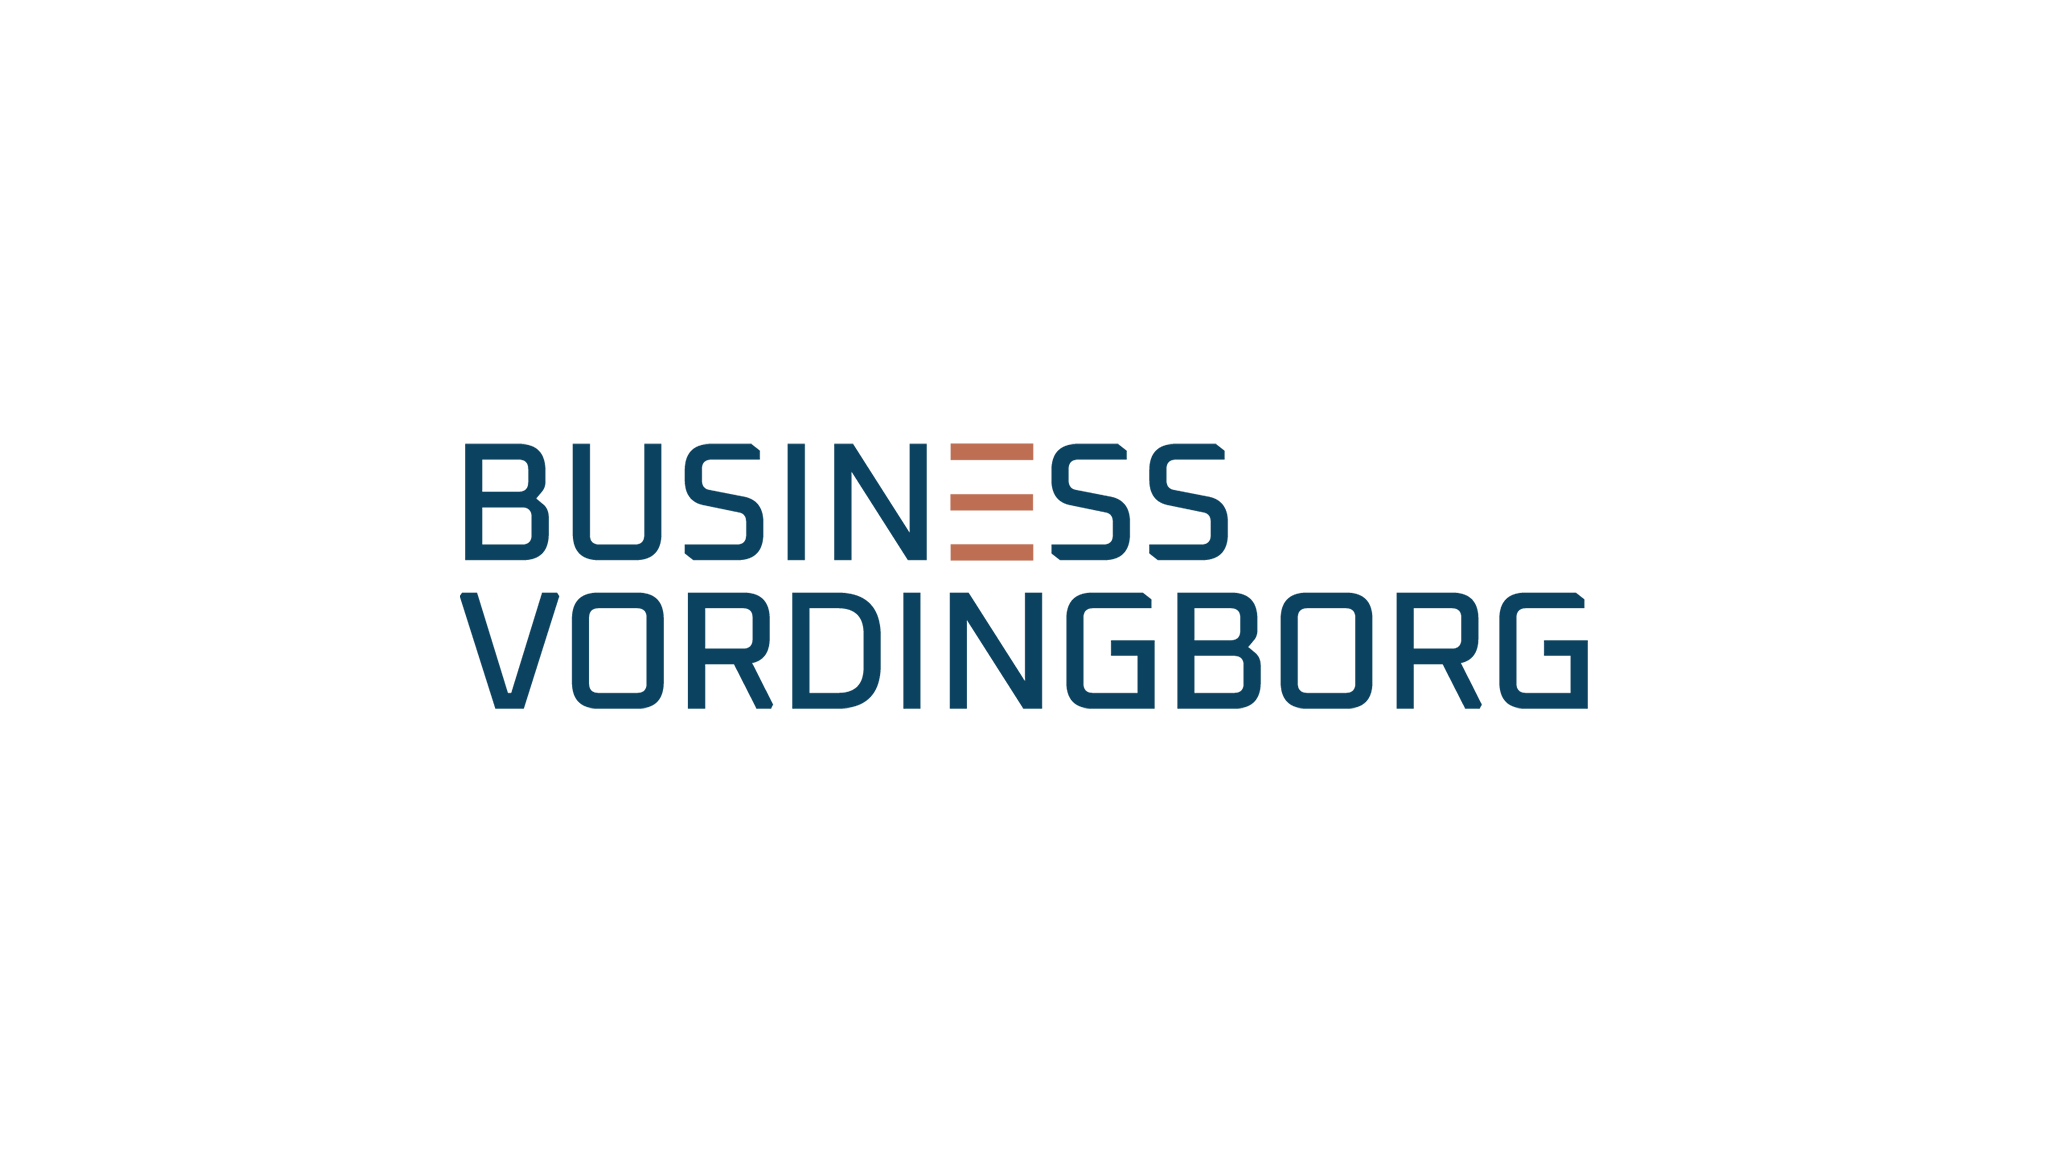 Business Vordingborg Logo